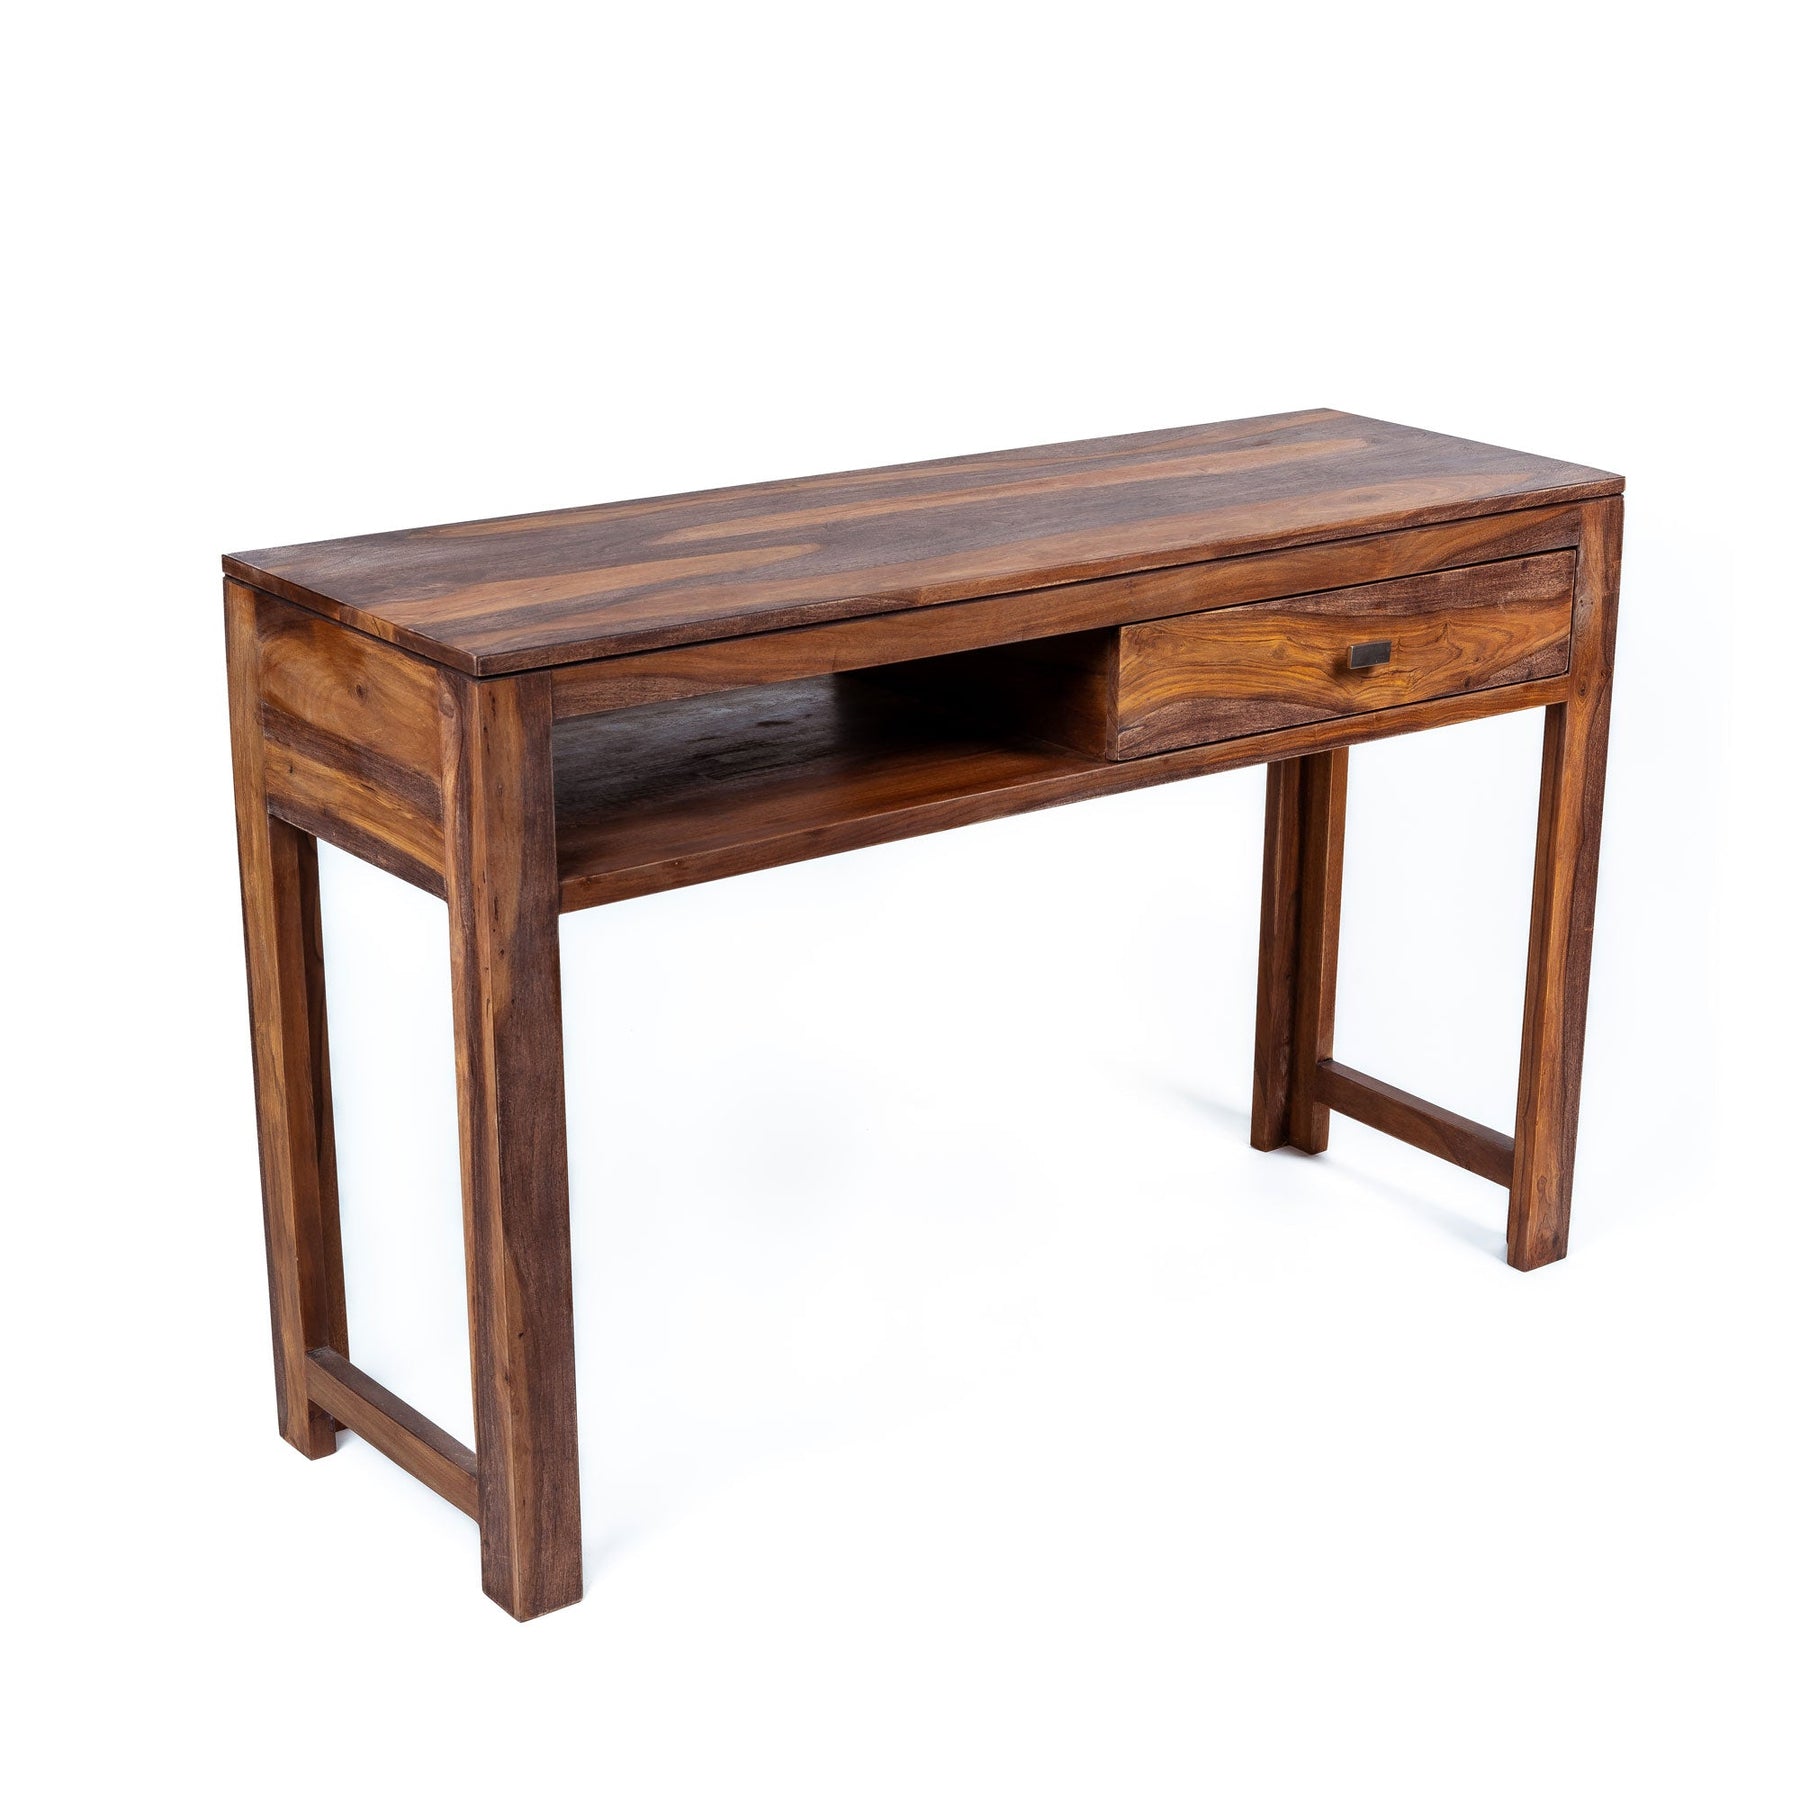 Bureau console grand | Grande console en bois | Bureau de table console avec un tiroir et une étagère